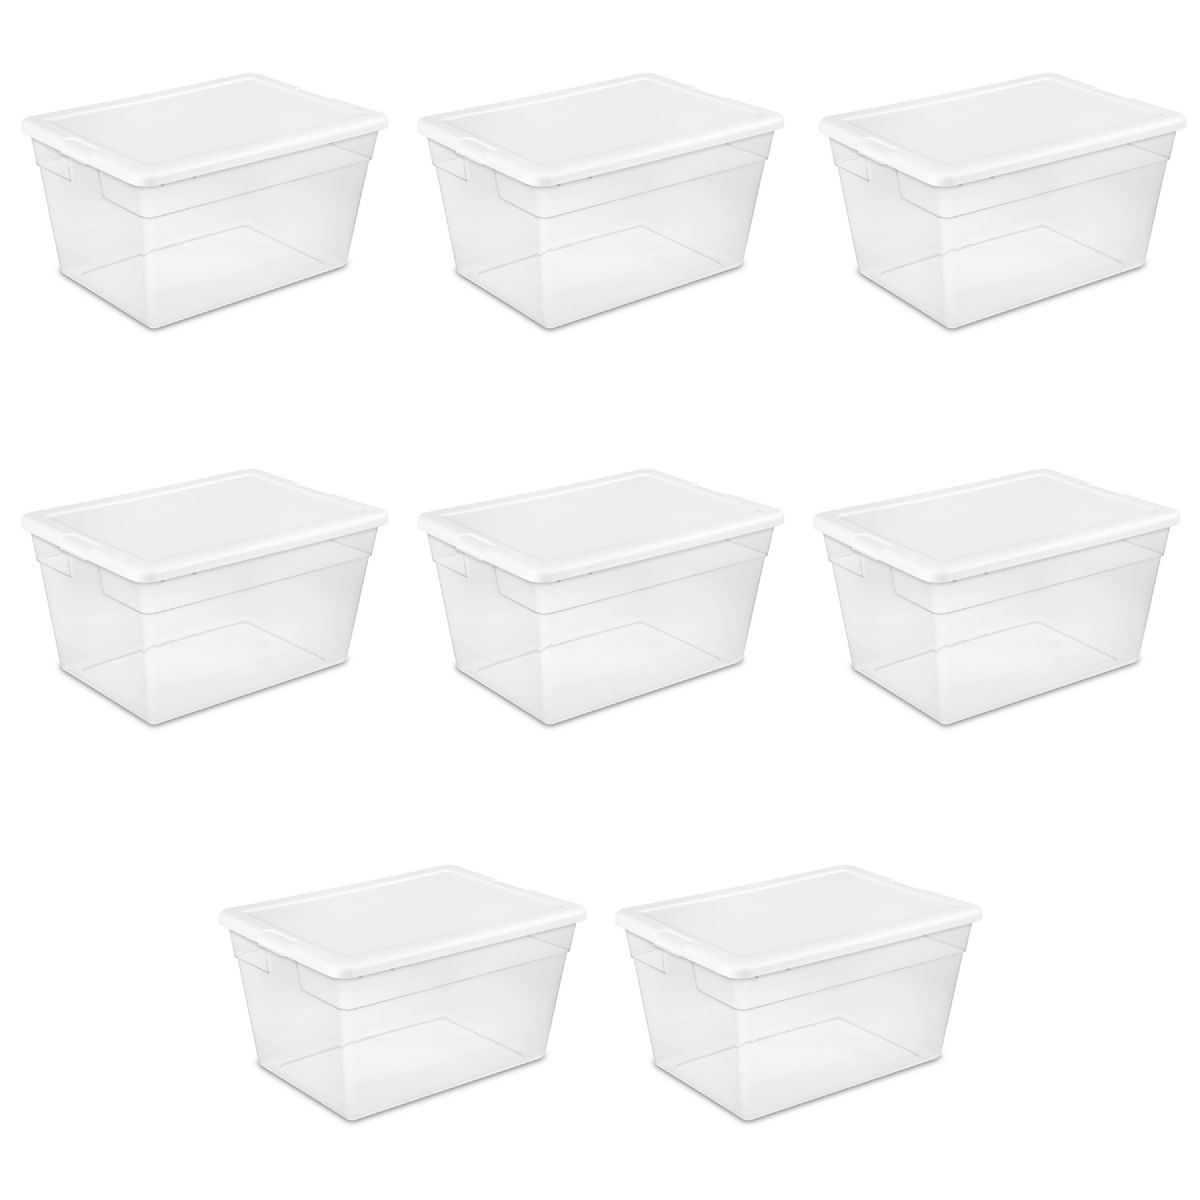 Sterilite 58 qt. Storage Box Plastic, White